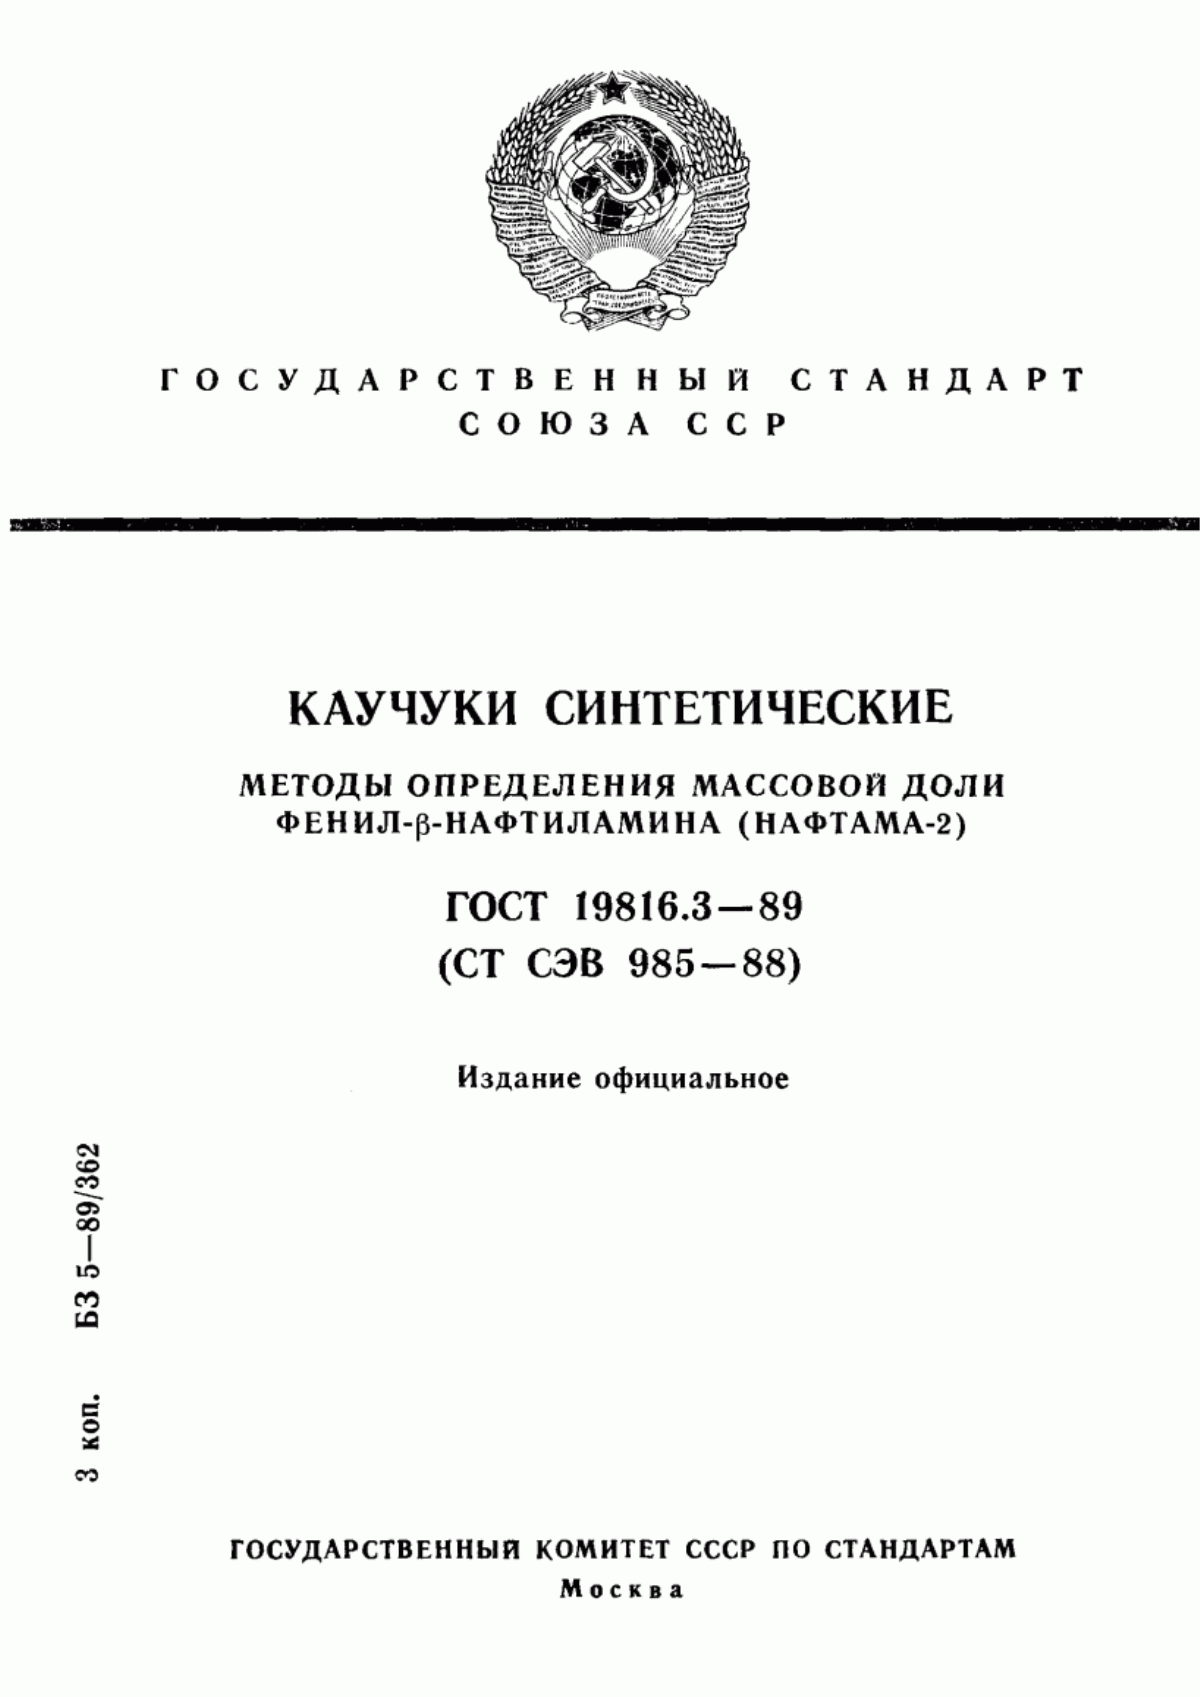 ГОСТ 19816.3-89 Каучуки синтетические. Методы определения массовой доли фенил-бета-нафтиламина (нафтама-2)